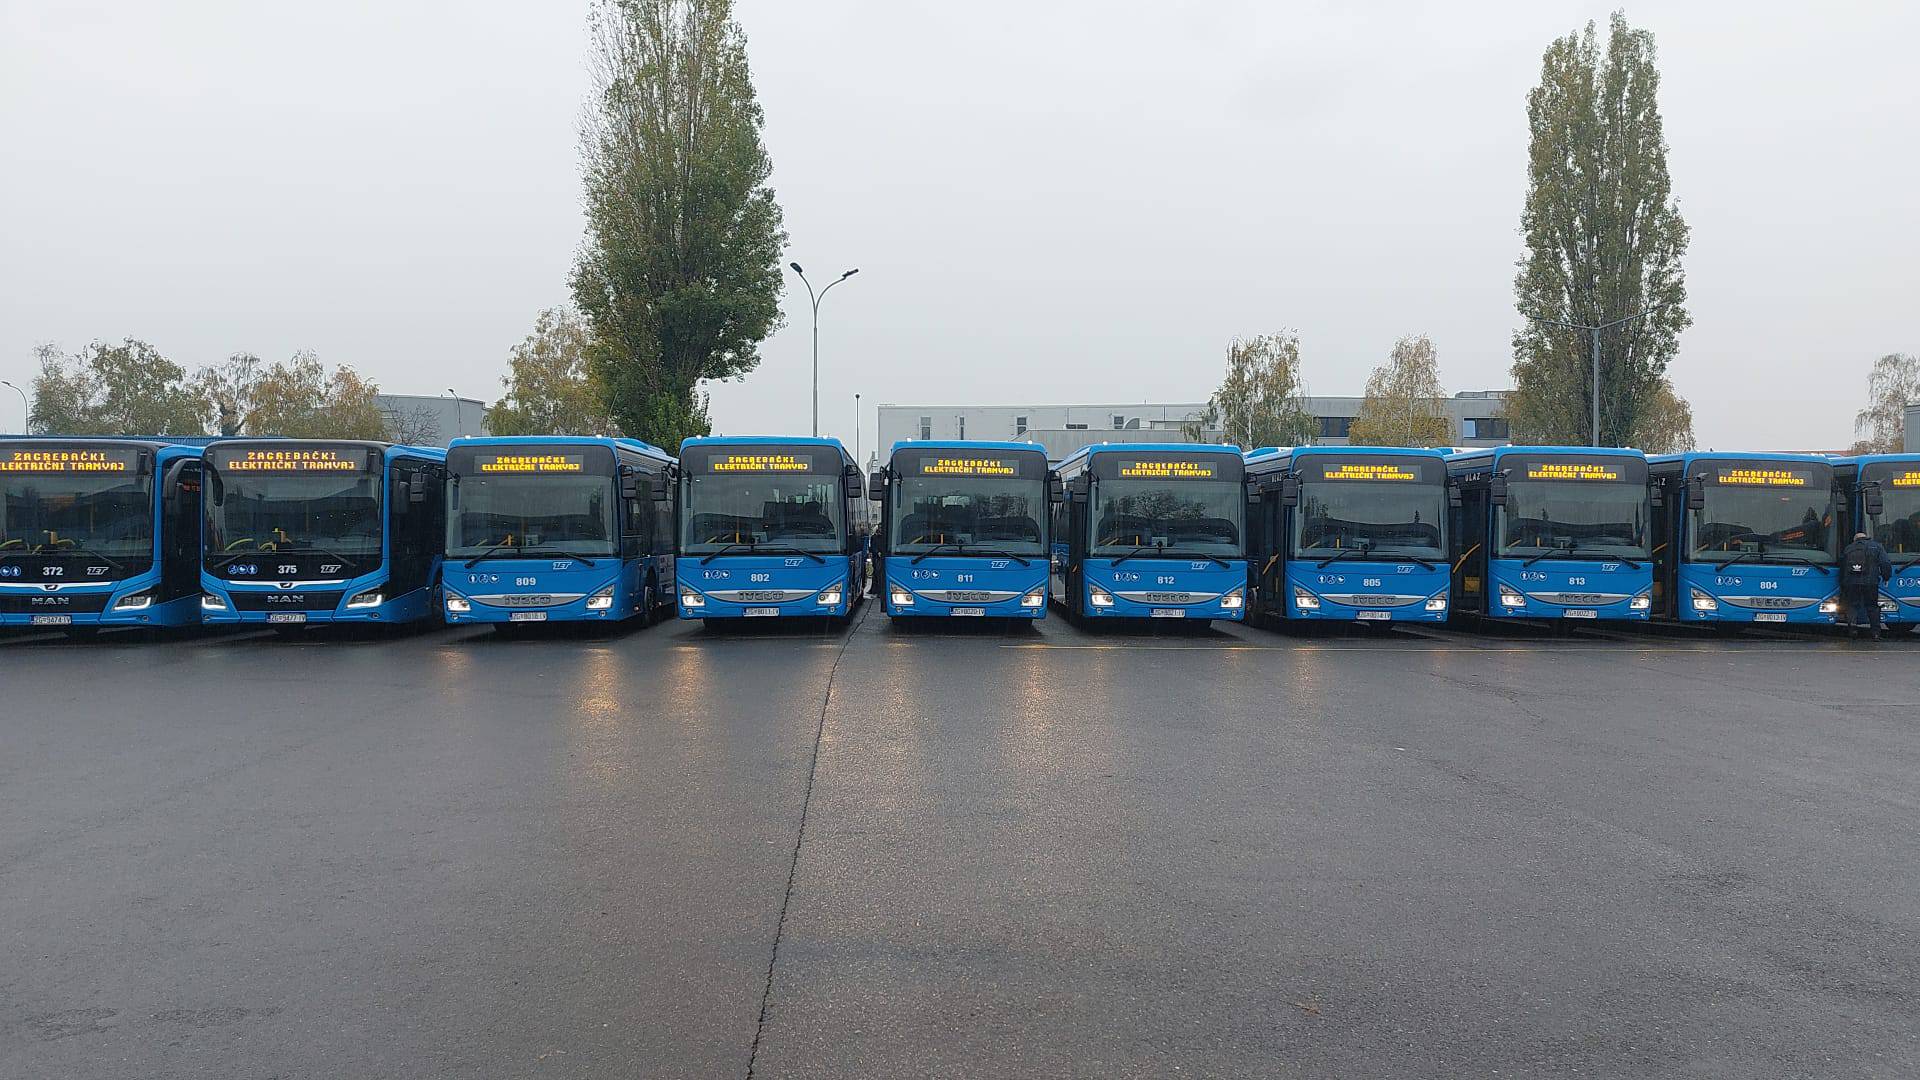 Ovo su novi ZET-ovi autobusi. Tomašević: Nadam se da će naši građani biti zadovoljni ovime!